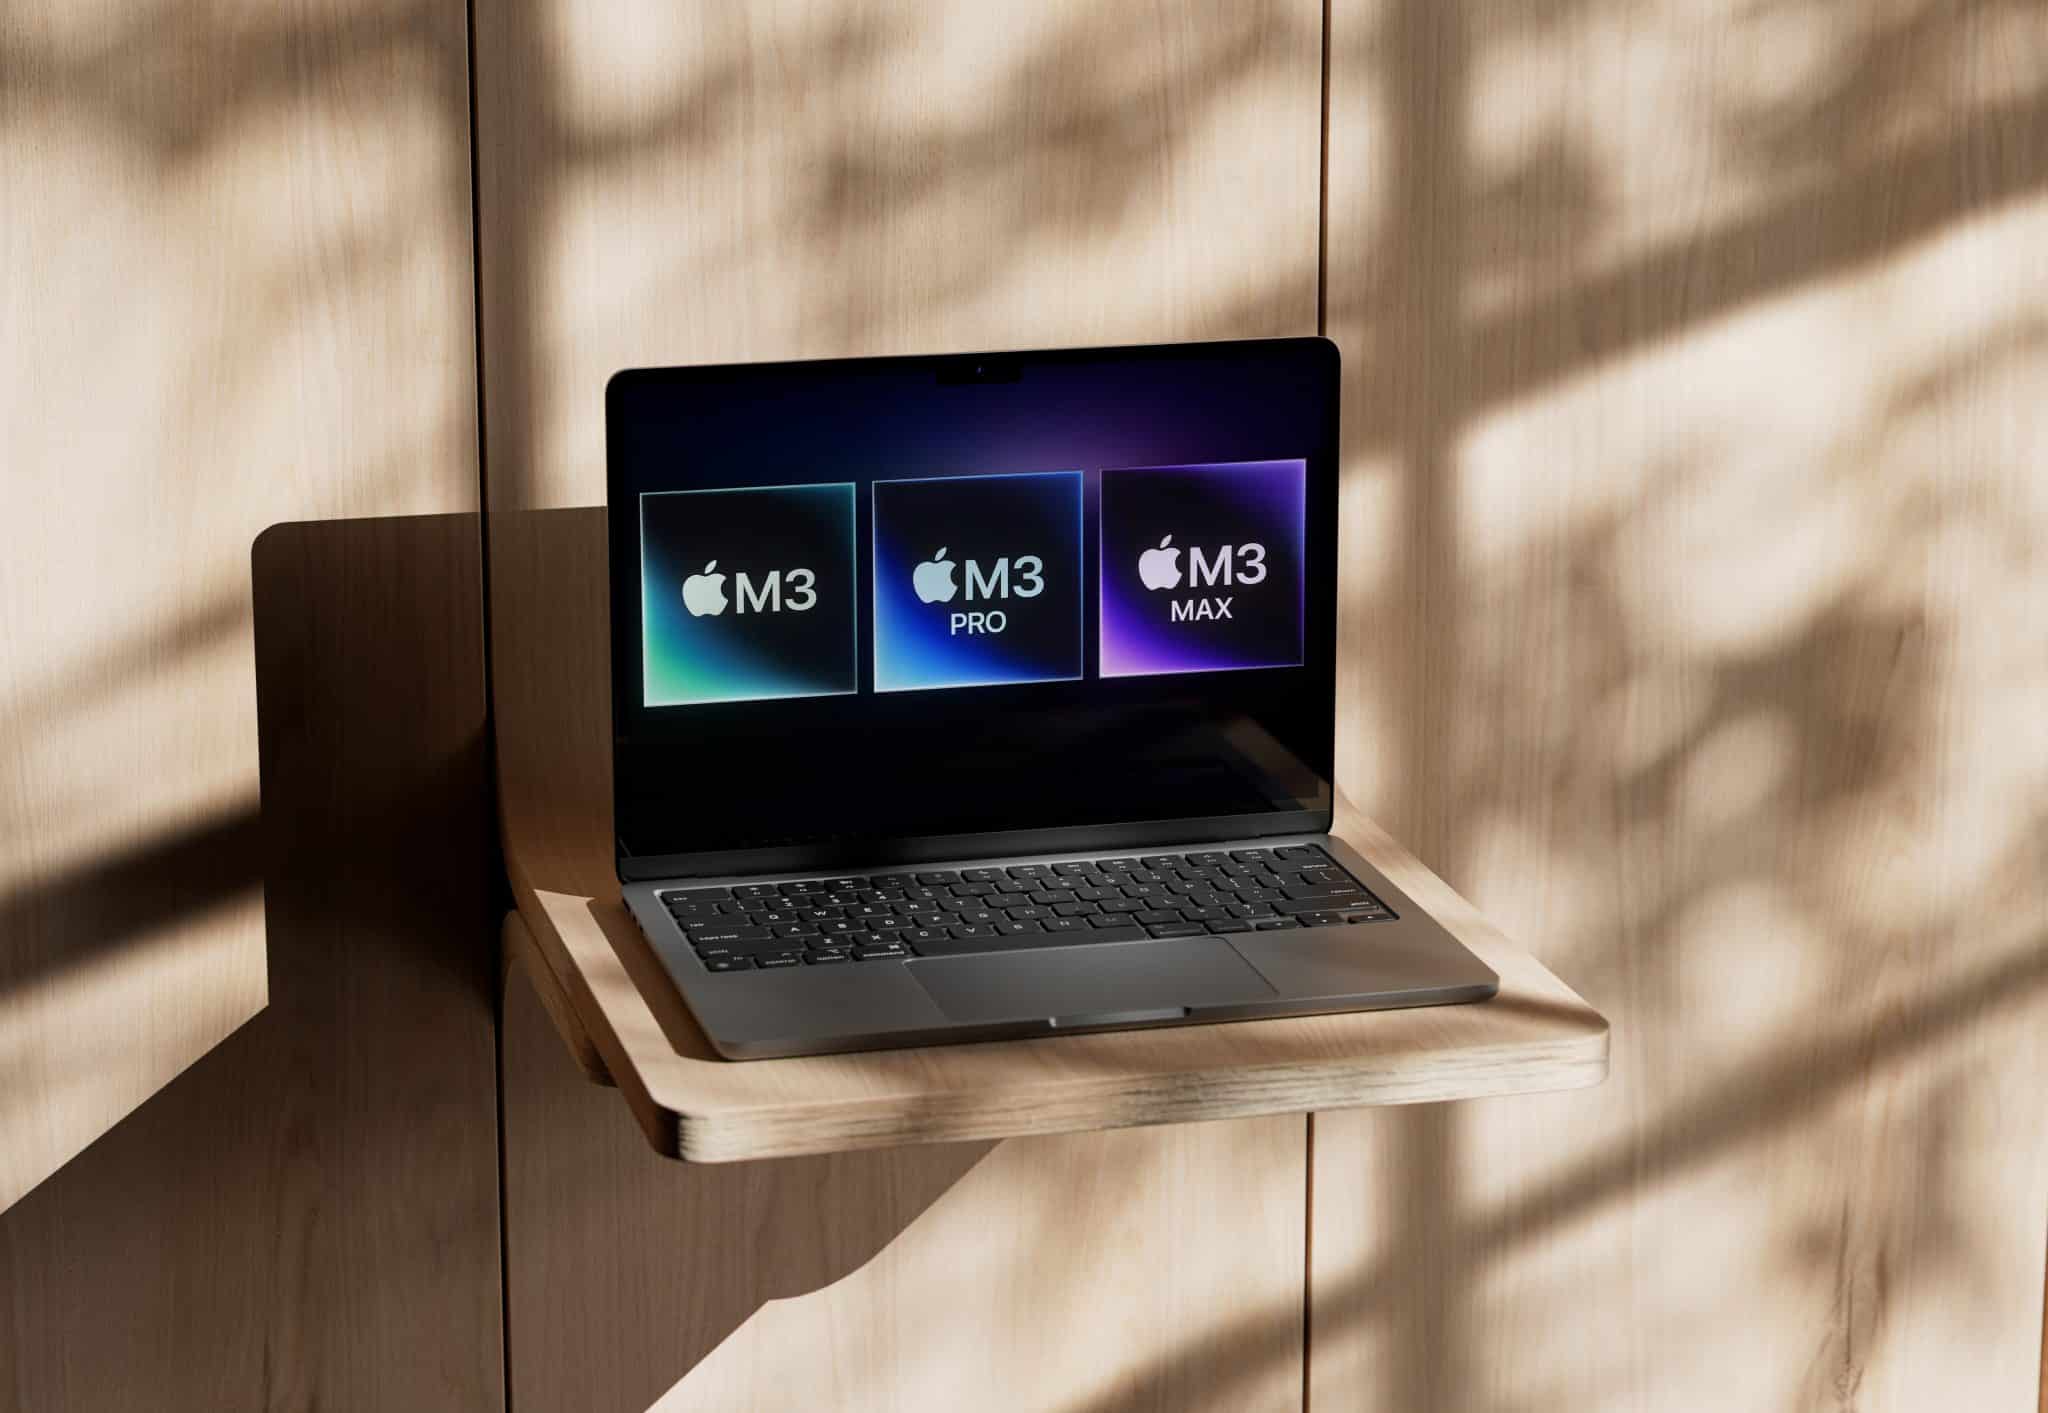 M3 Macs: Benchmarks, Weniger Speicherbandbreite, Ein Display, Zwei Thunderbolt und mehr